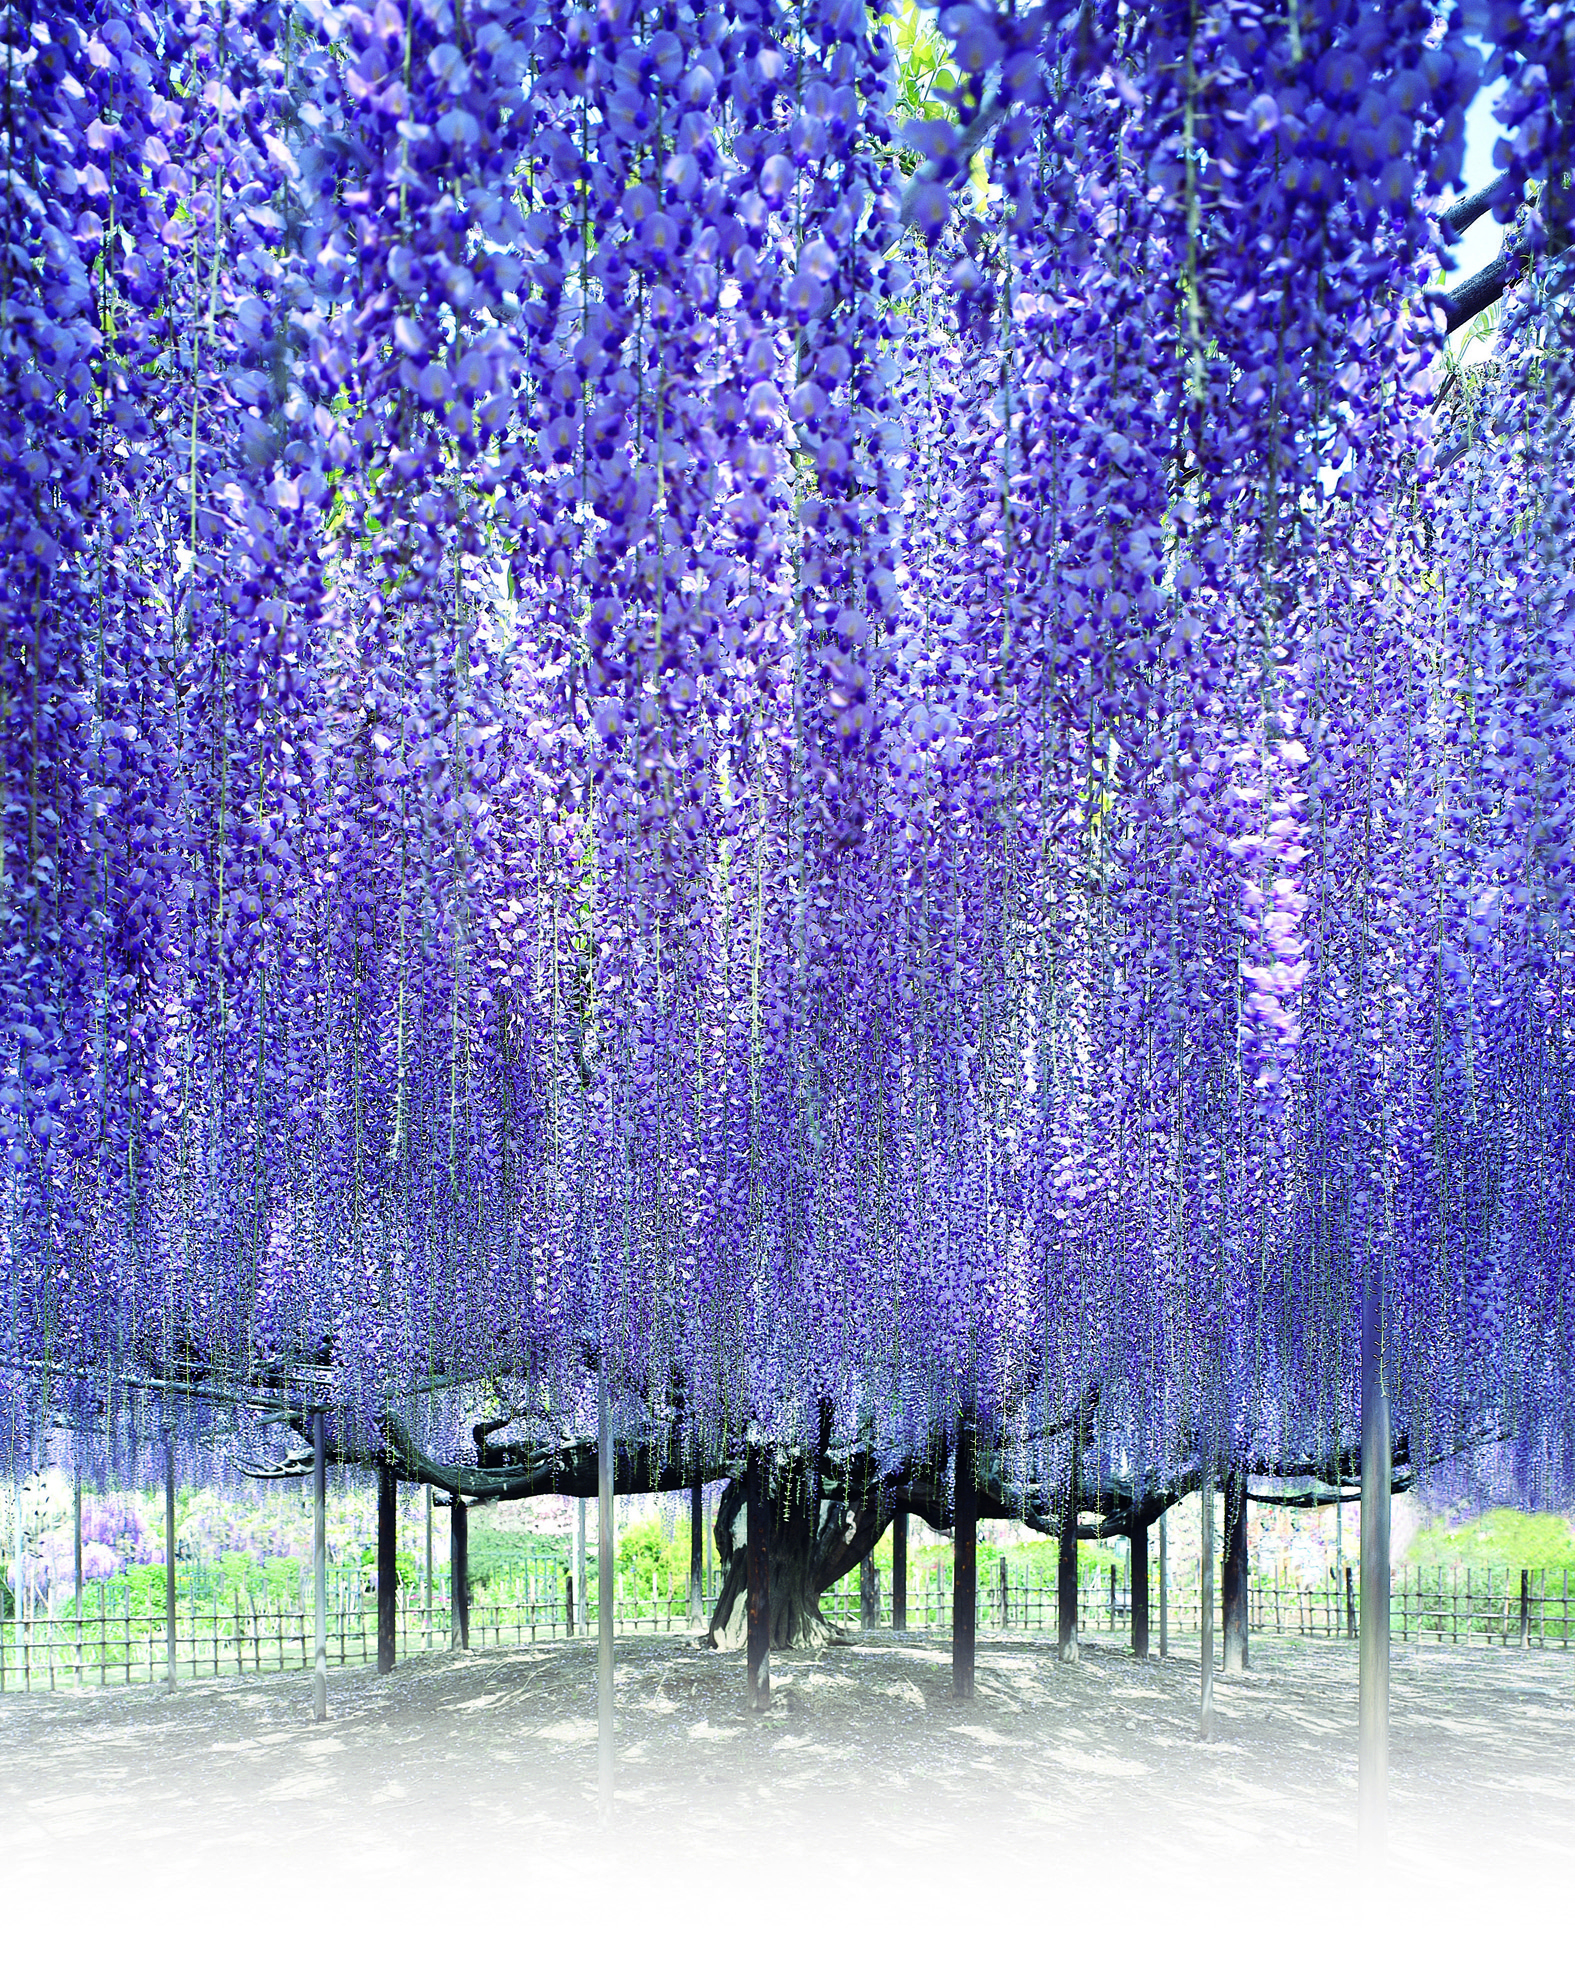 紫藤花一年四季的变化图片